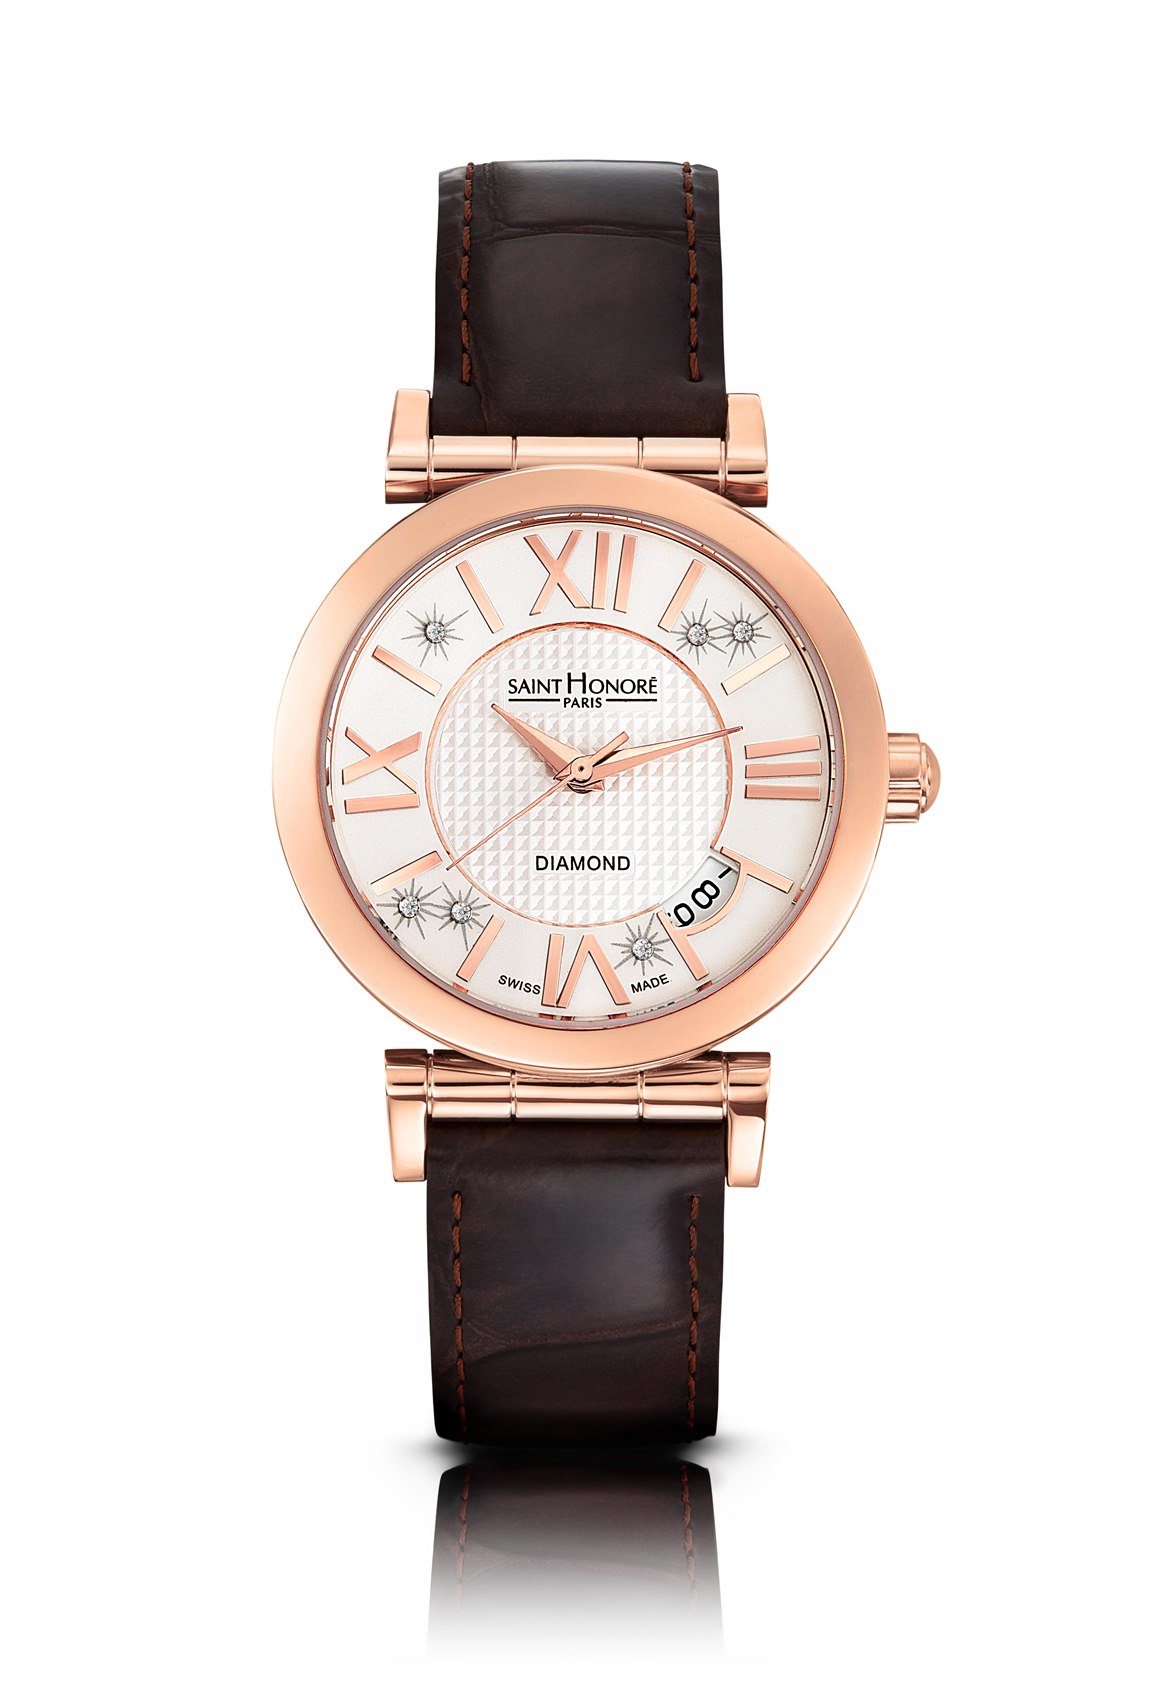 hublot watch prices switzerland